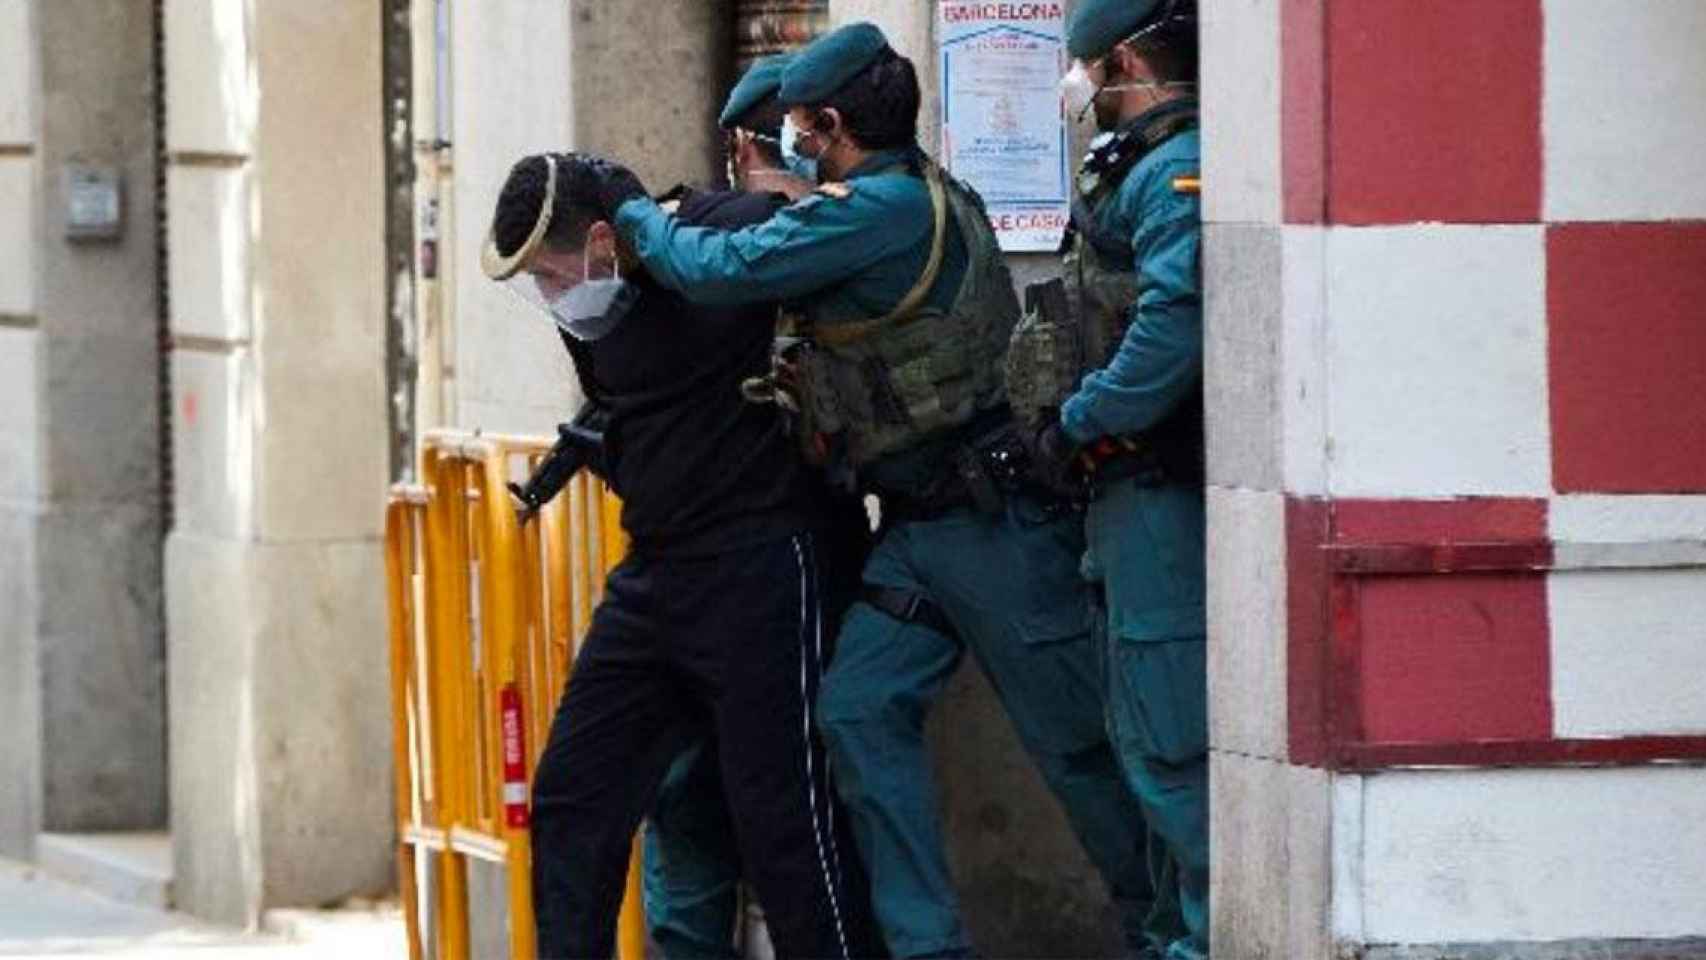 La Guardia Civil detiene al presunto yihadista en Barcelona / E